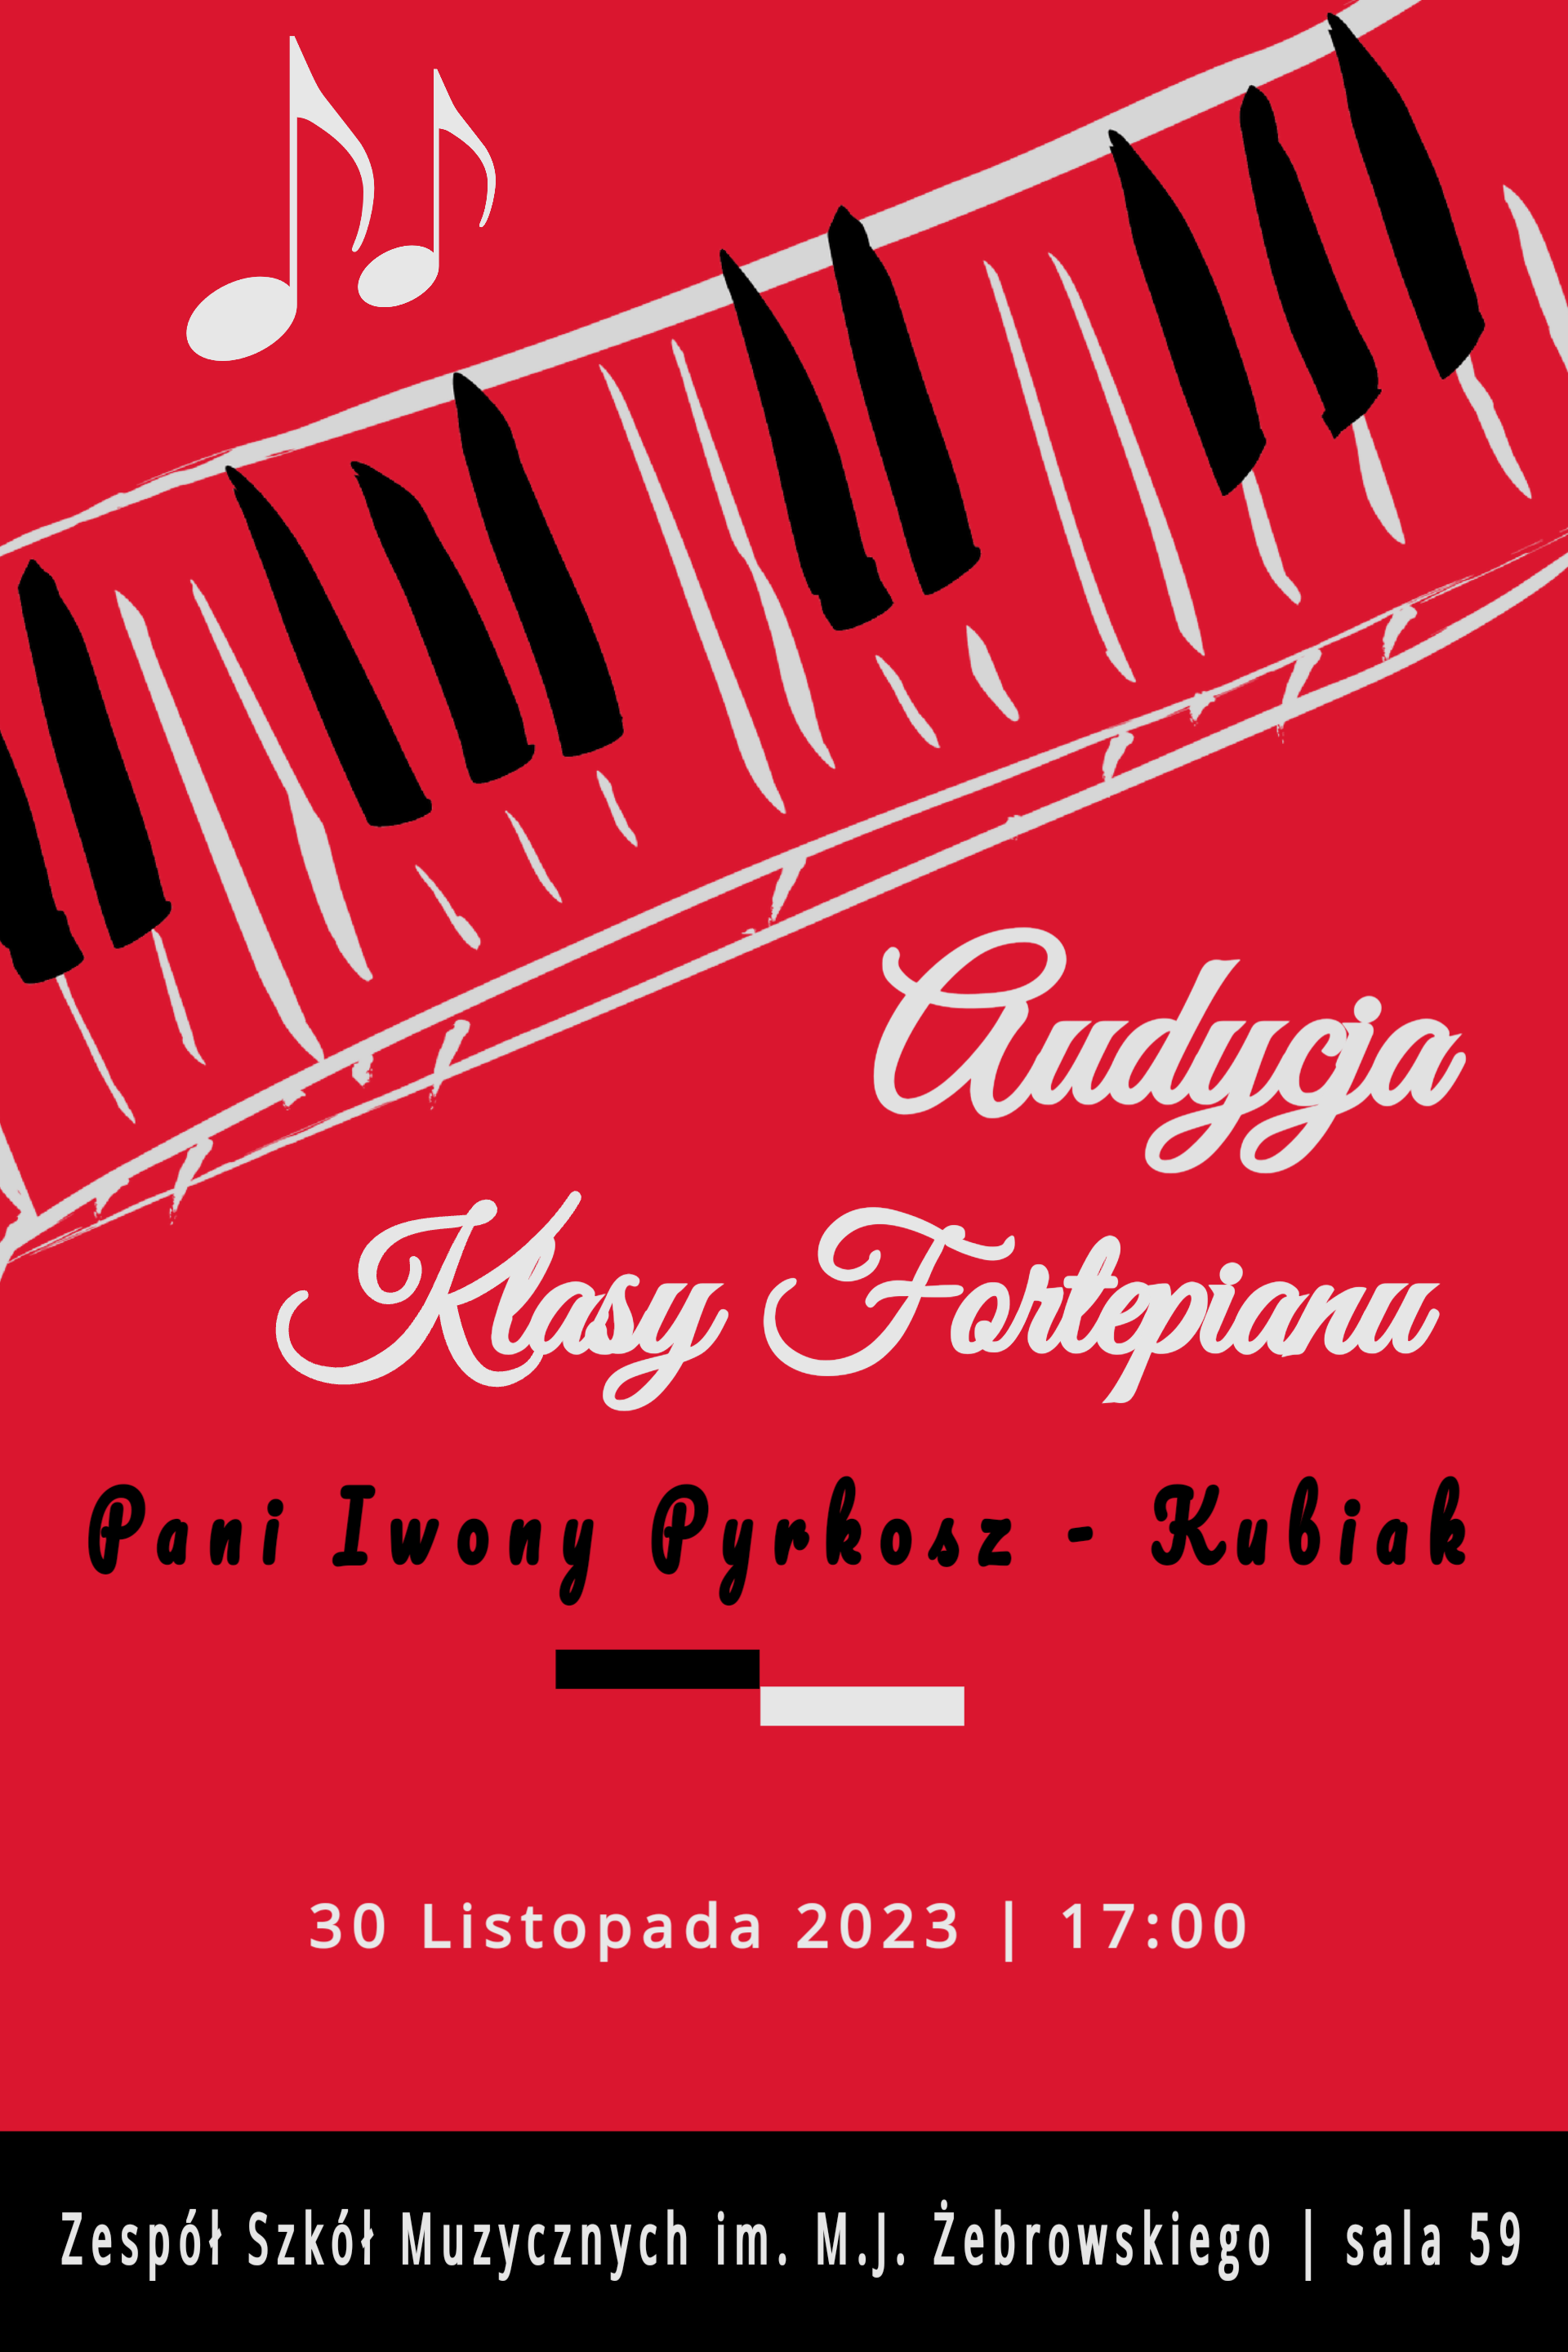 Czerwone tło, na górze namalowana klawiatura, informacje dotyczące audycji klasy fortepianu pani Iwony Pyrkosz - Kubiak, 30 listopada 2023 roku o godz. 17.00 w sali 59